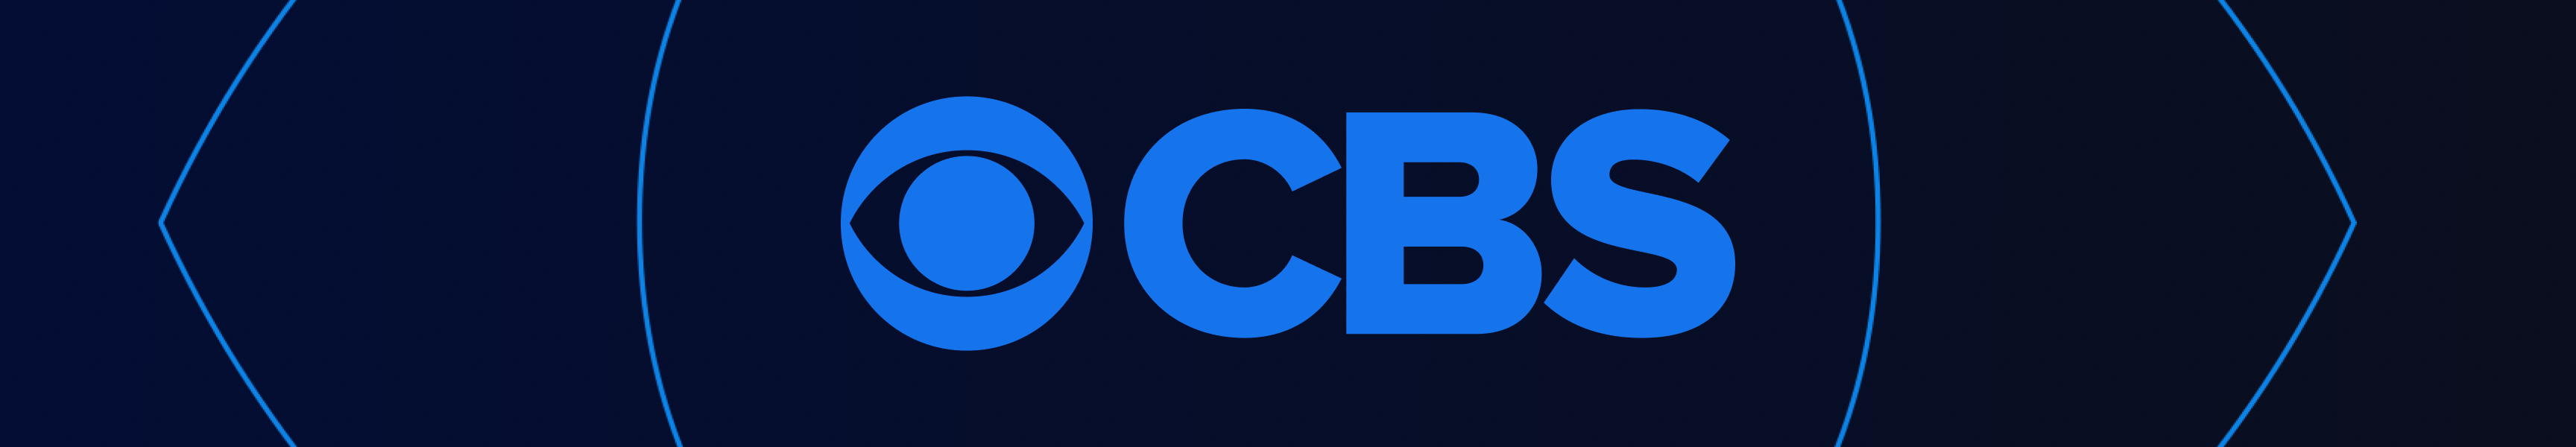 CBS Entertainment Novedades